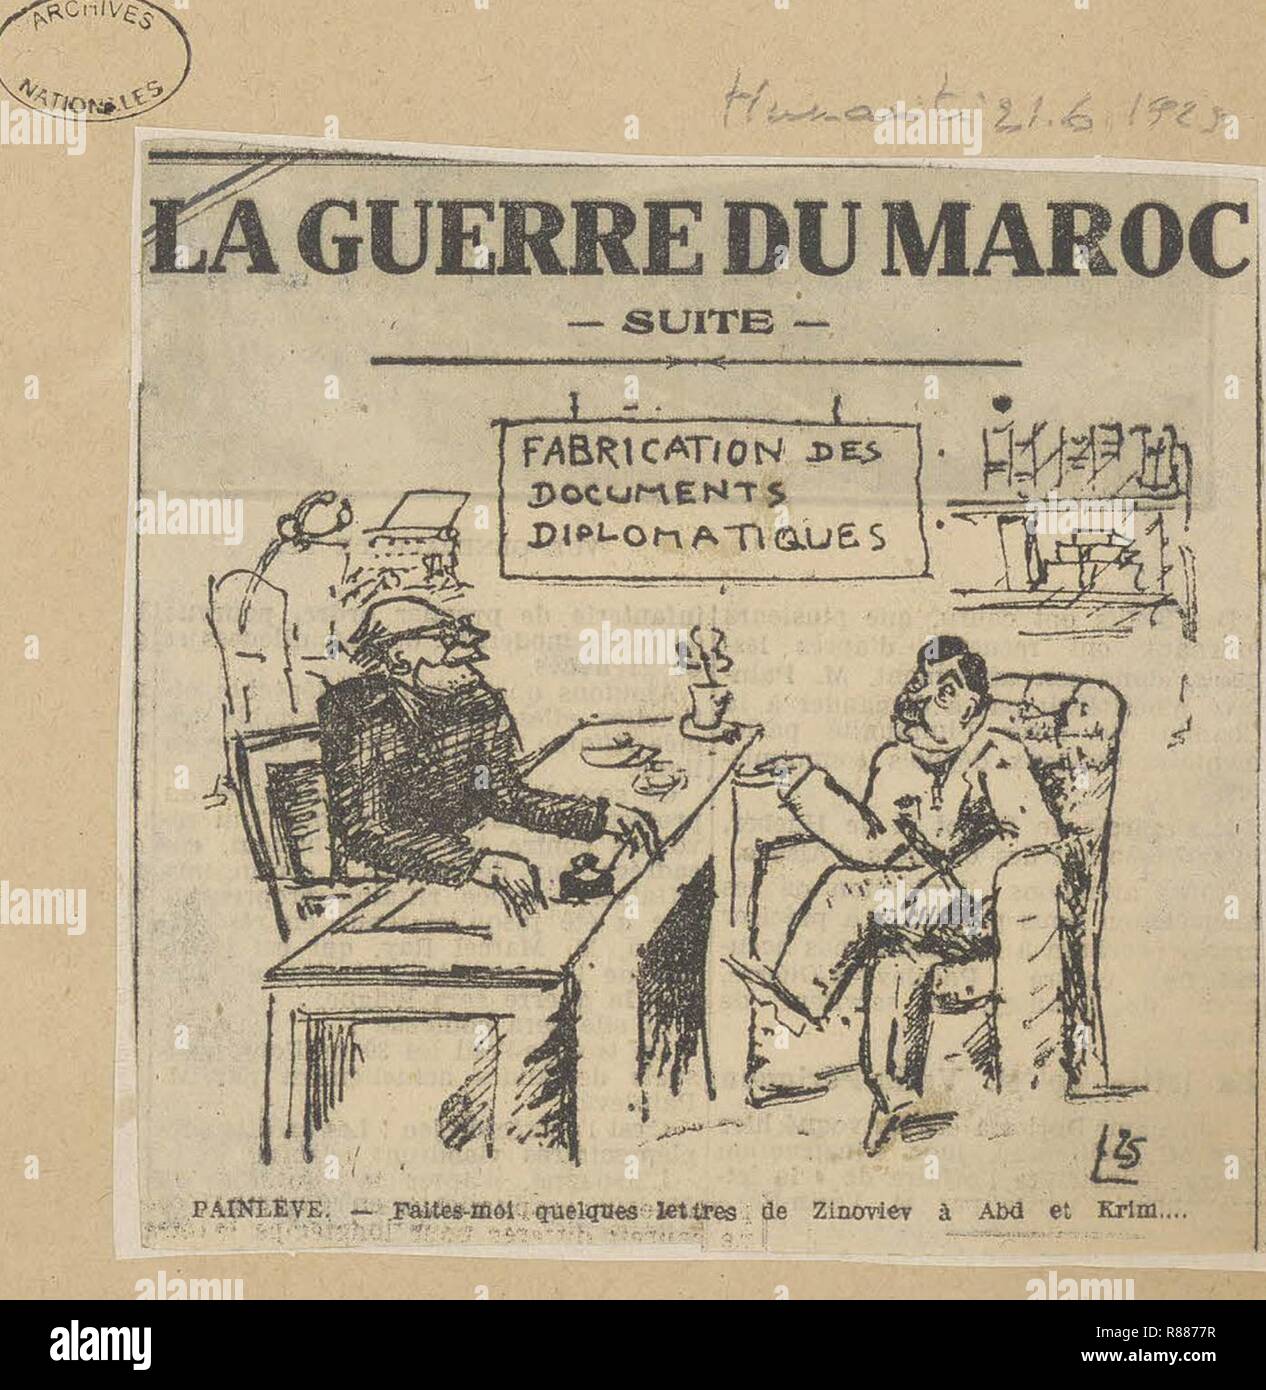 Caricatura de Paul Painlevé, président du Conseil, par laquelle il est accusé de fabriquer de faux papiers diplomatique - Archives Nationales - 313AP-20 - (1). Foto de stock